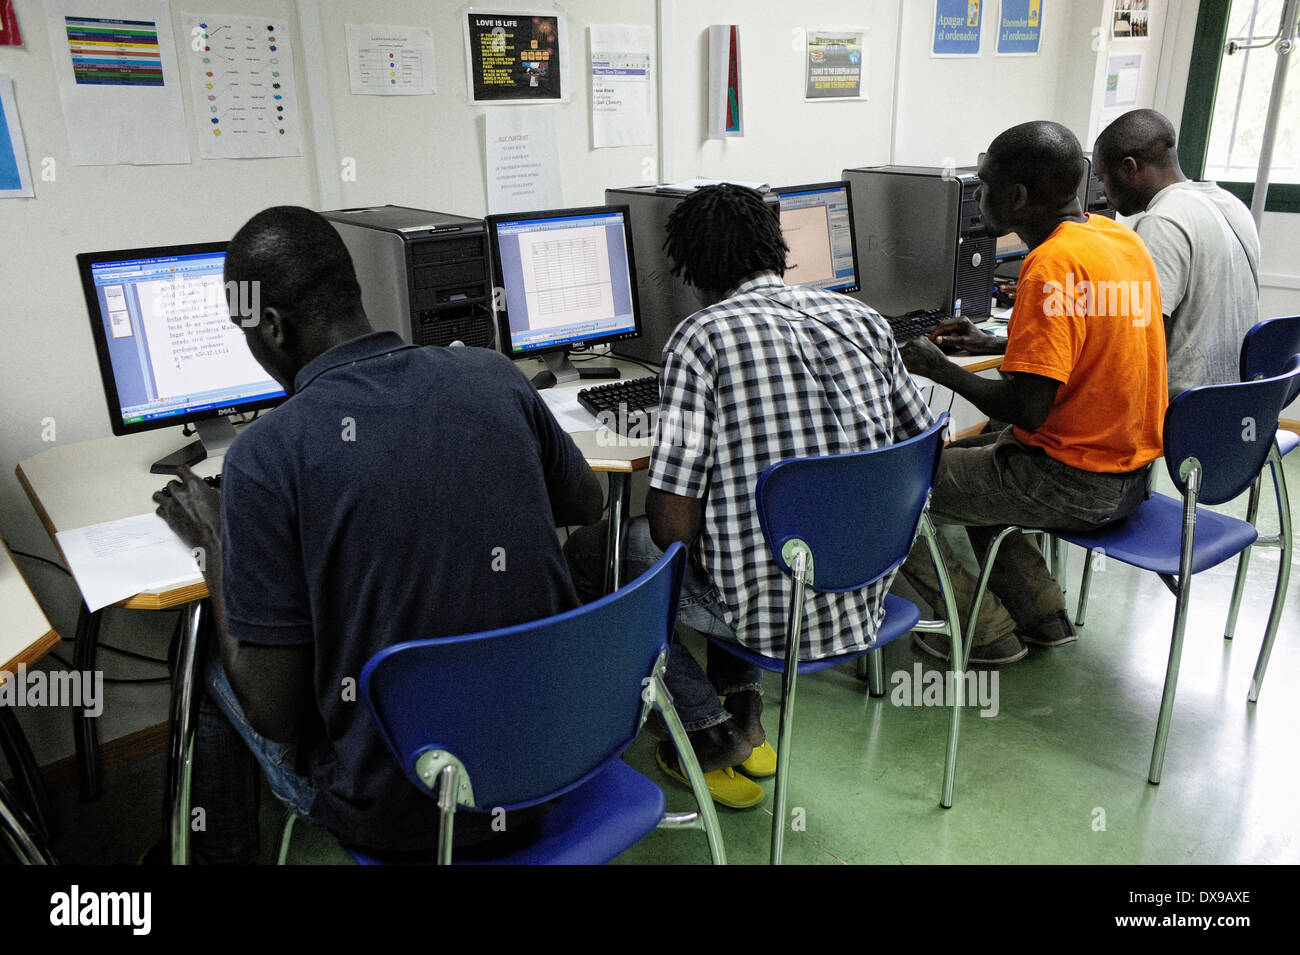 Les immigrants illégaux dans une classe d'informatique dans le Centre de séjour temporaire pour les immigrants dans l'enclave espagnole de Ceuta. Banque D'Images